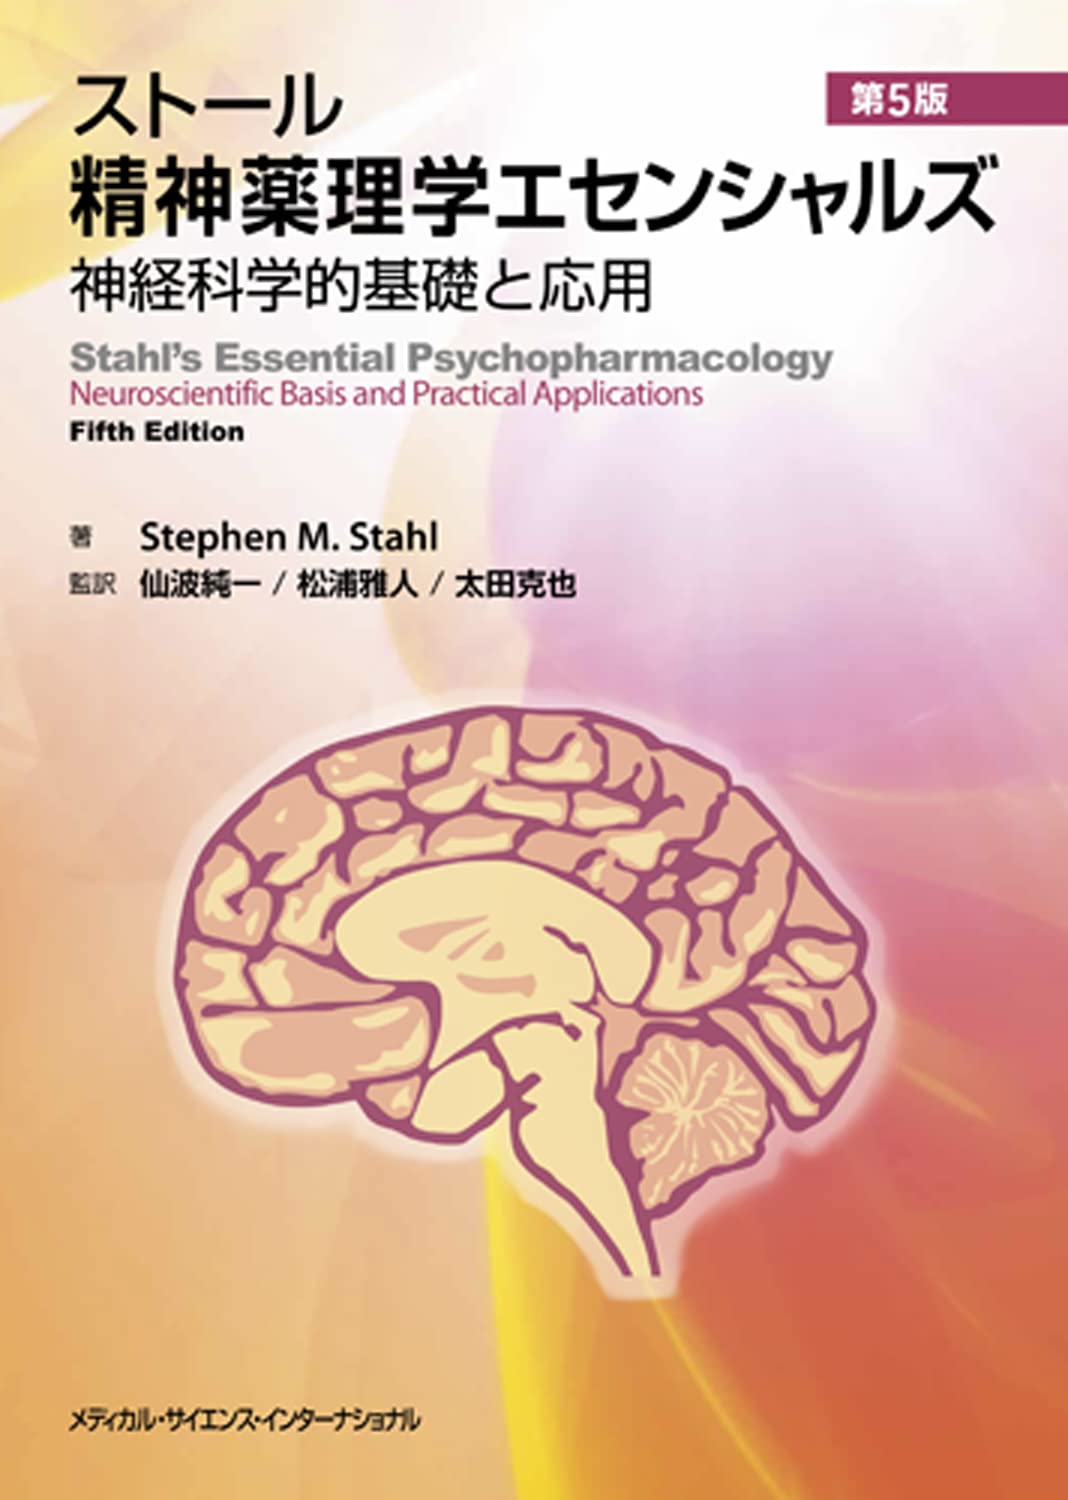 ストール精神薬理学エセンシャルズ - 神経科学的基礎と応用 - 第5版